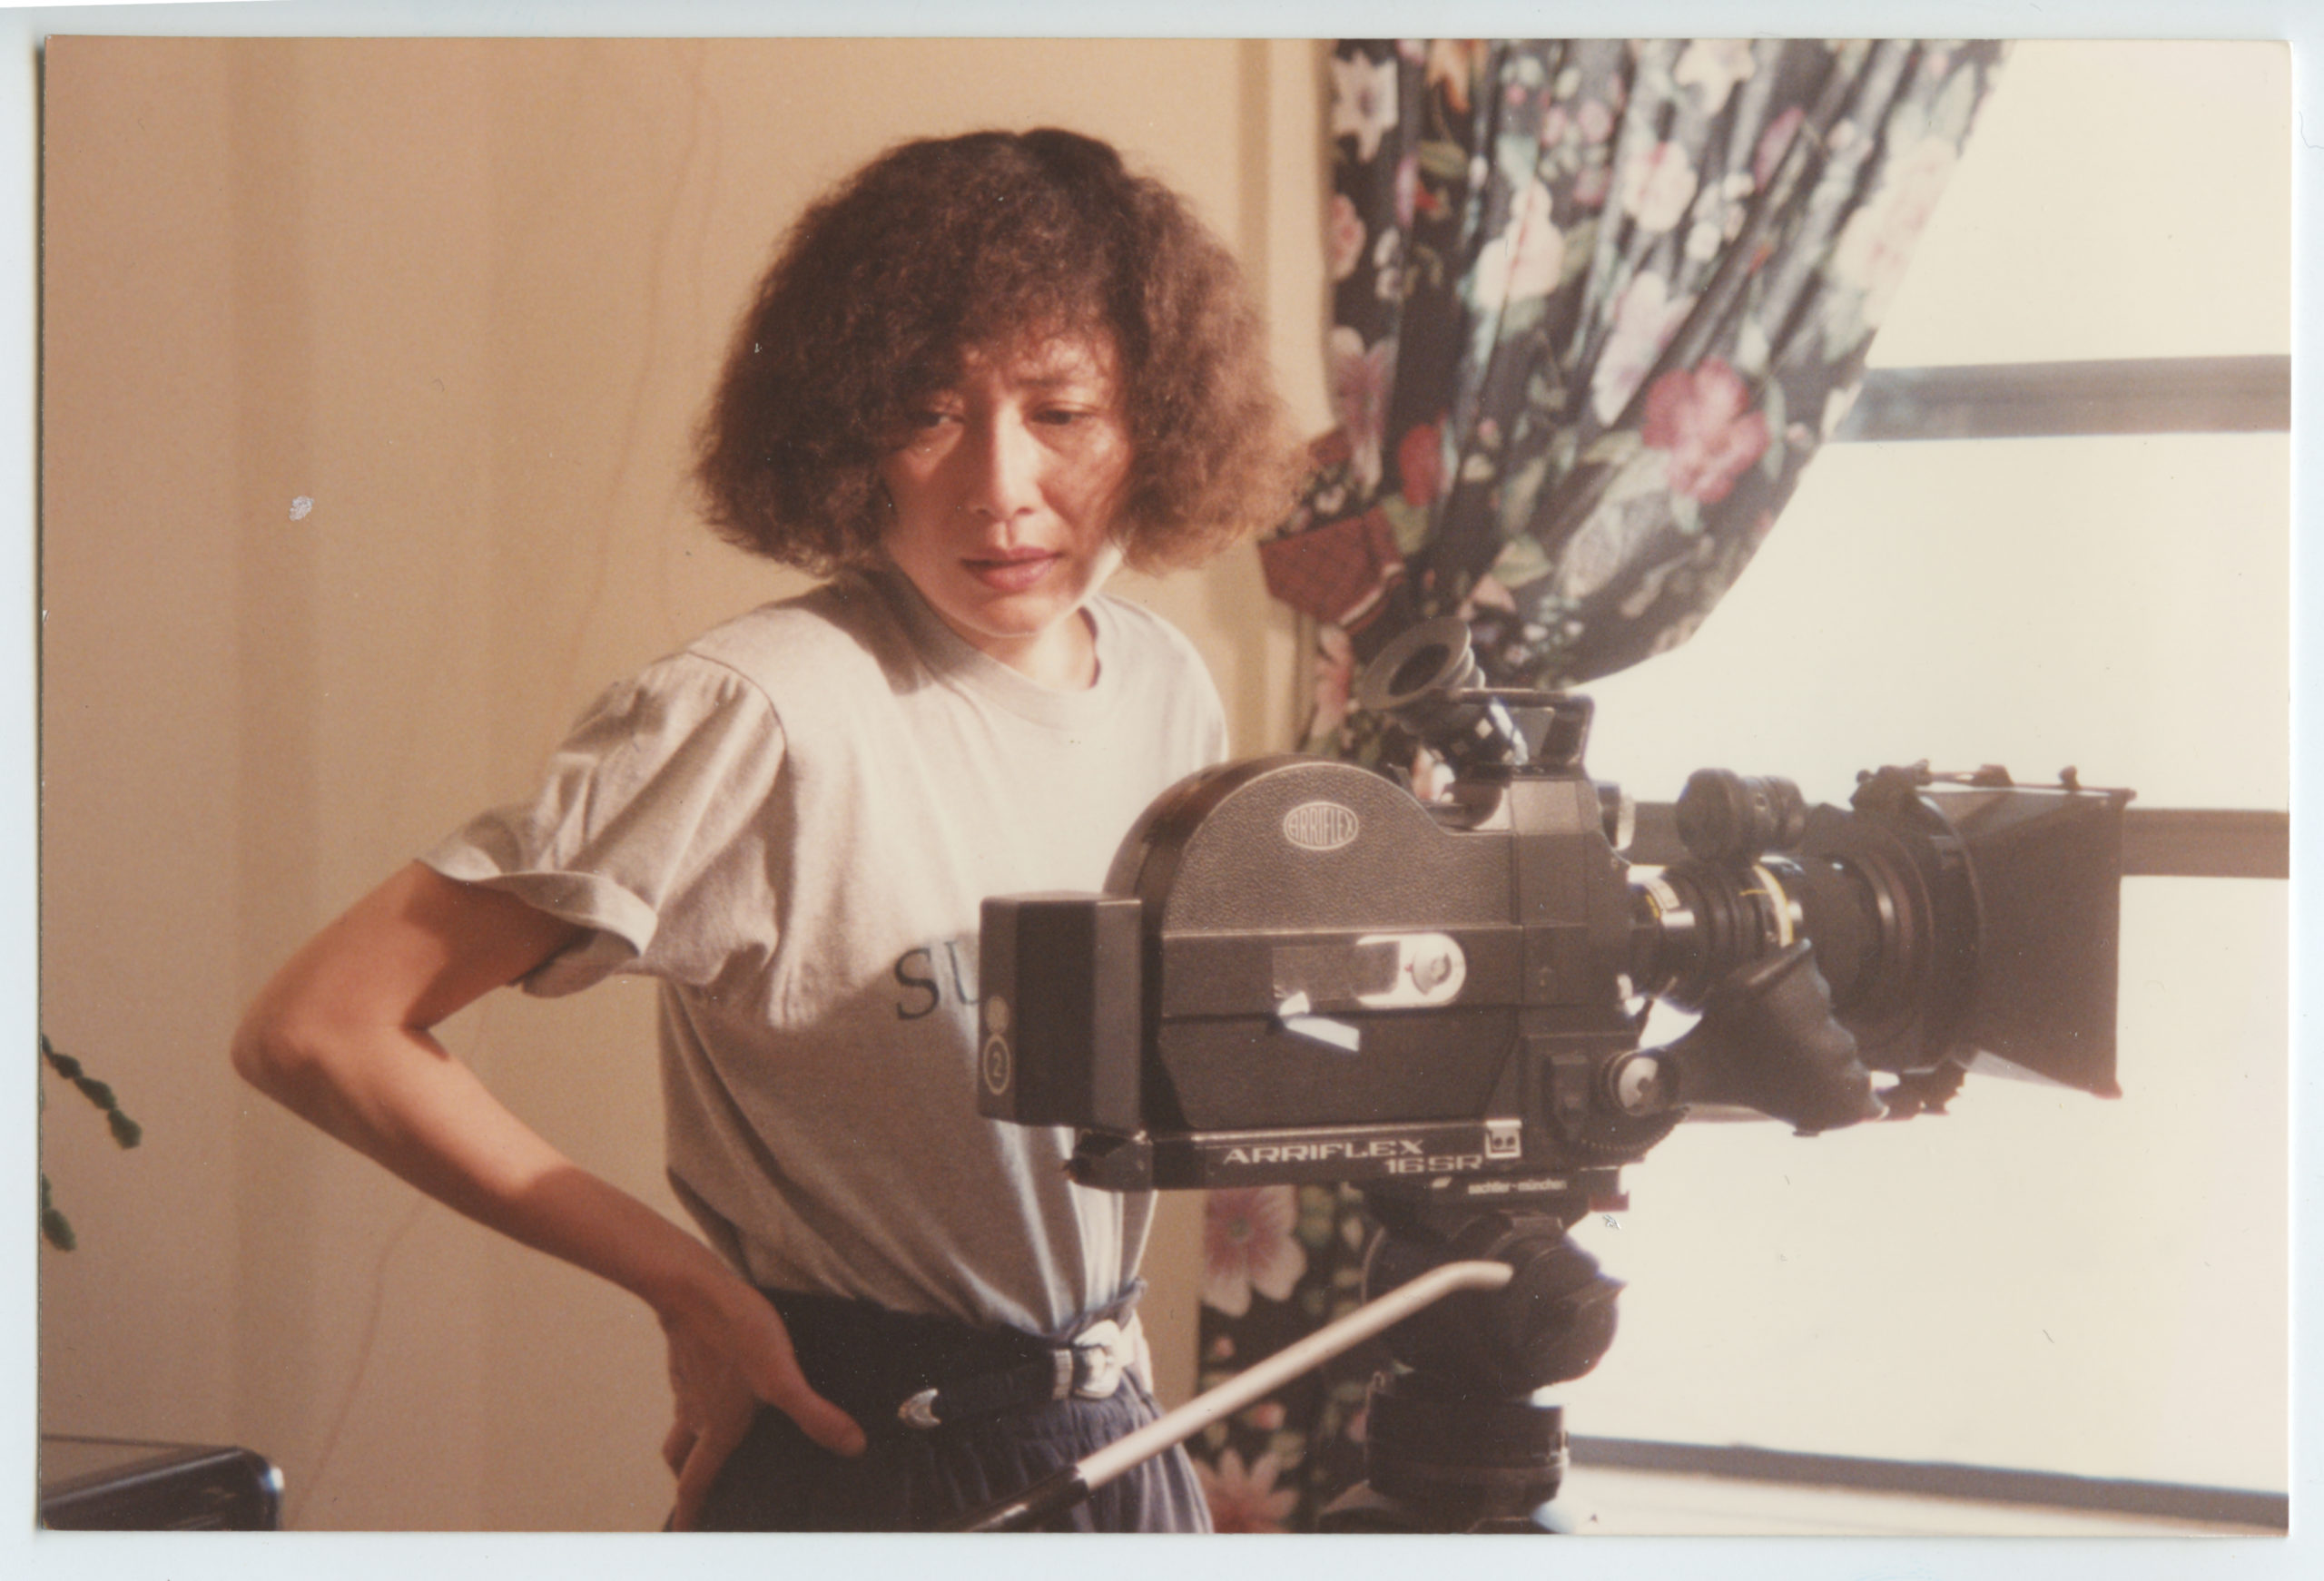 摄影机背后的电影制作人 Christine Choy。照片由 Christine Choy 提供。